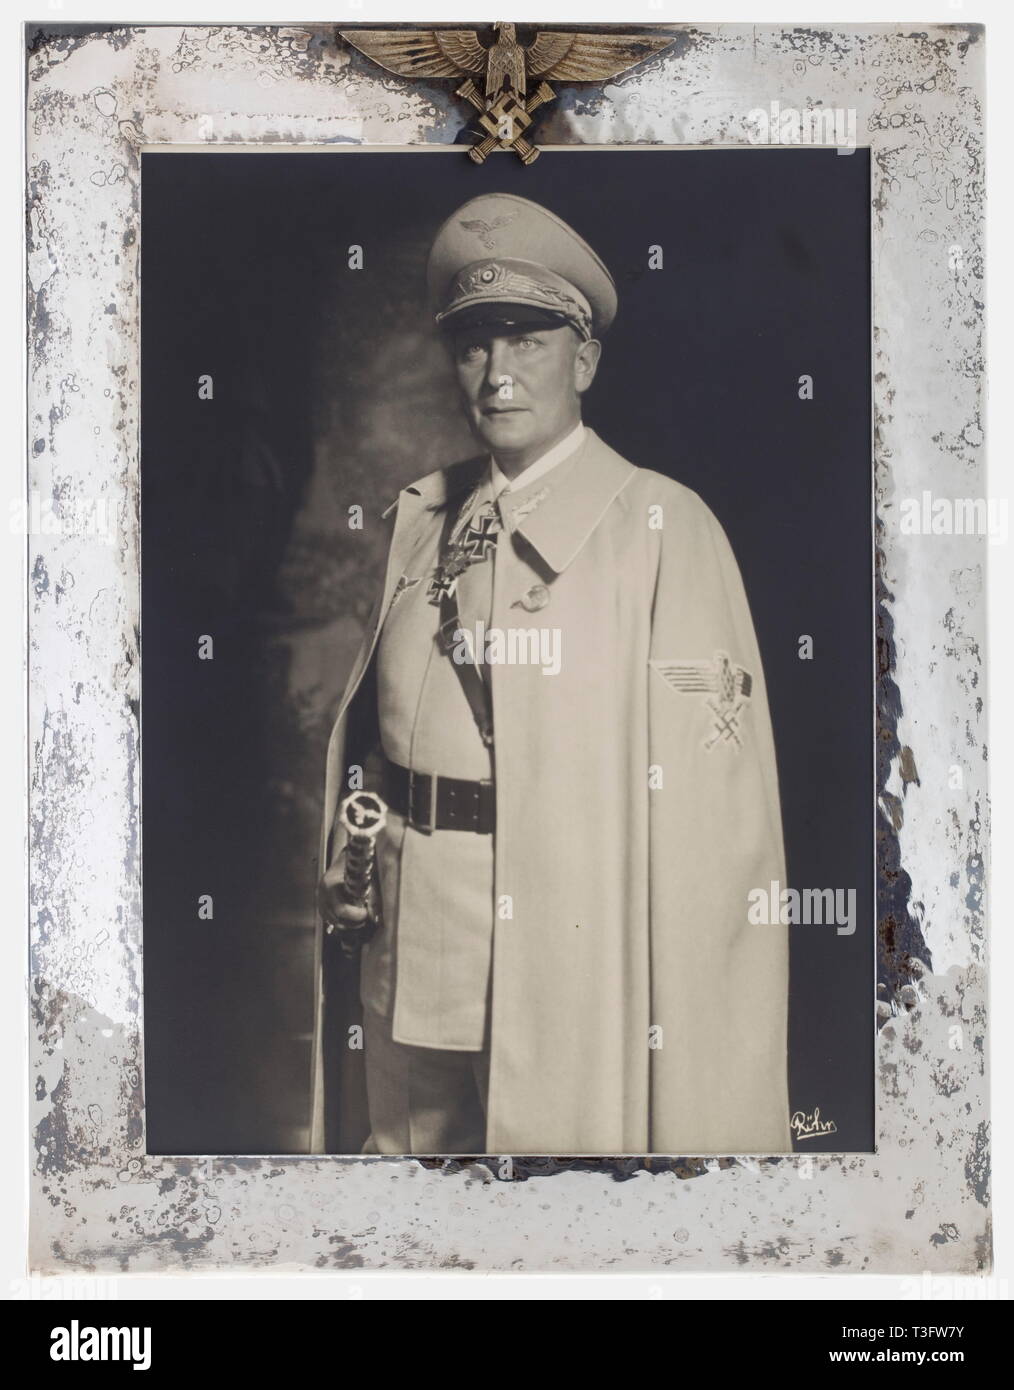 Hermann Göring, une grande présentation d'argent un grand format de trame Röhr portrait photographique de Göring Reich Marschal en uniforme d'été avec le service pac, cape, bâton de maréchal, et le port de la médaille pour le mérite, Chevaliers, croix et Grand-croix de la Croix de fer. Sous verre dans un cadre de couleur argent martelé le roulement du Marshal Reich eagle. Avec le manque de clarté de l'obscurité, marque de son bijoutier préféré, le professeur Zeitner, sur le bord inférieur droit. Dimensions 36 x 29 cm., 1930, 20e siècle, N.-É., le National-socialisme, le Nazisme, Troisième Reich, l'Empire allemand, l'Allemagne, l'allemand, Parti national-socialiste, , Editorial-Use-seulement Banque D'Images